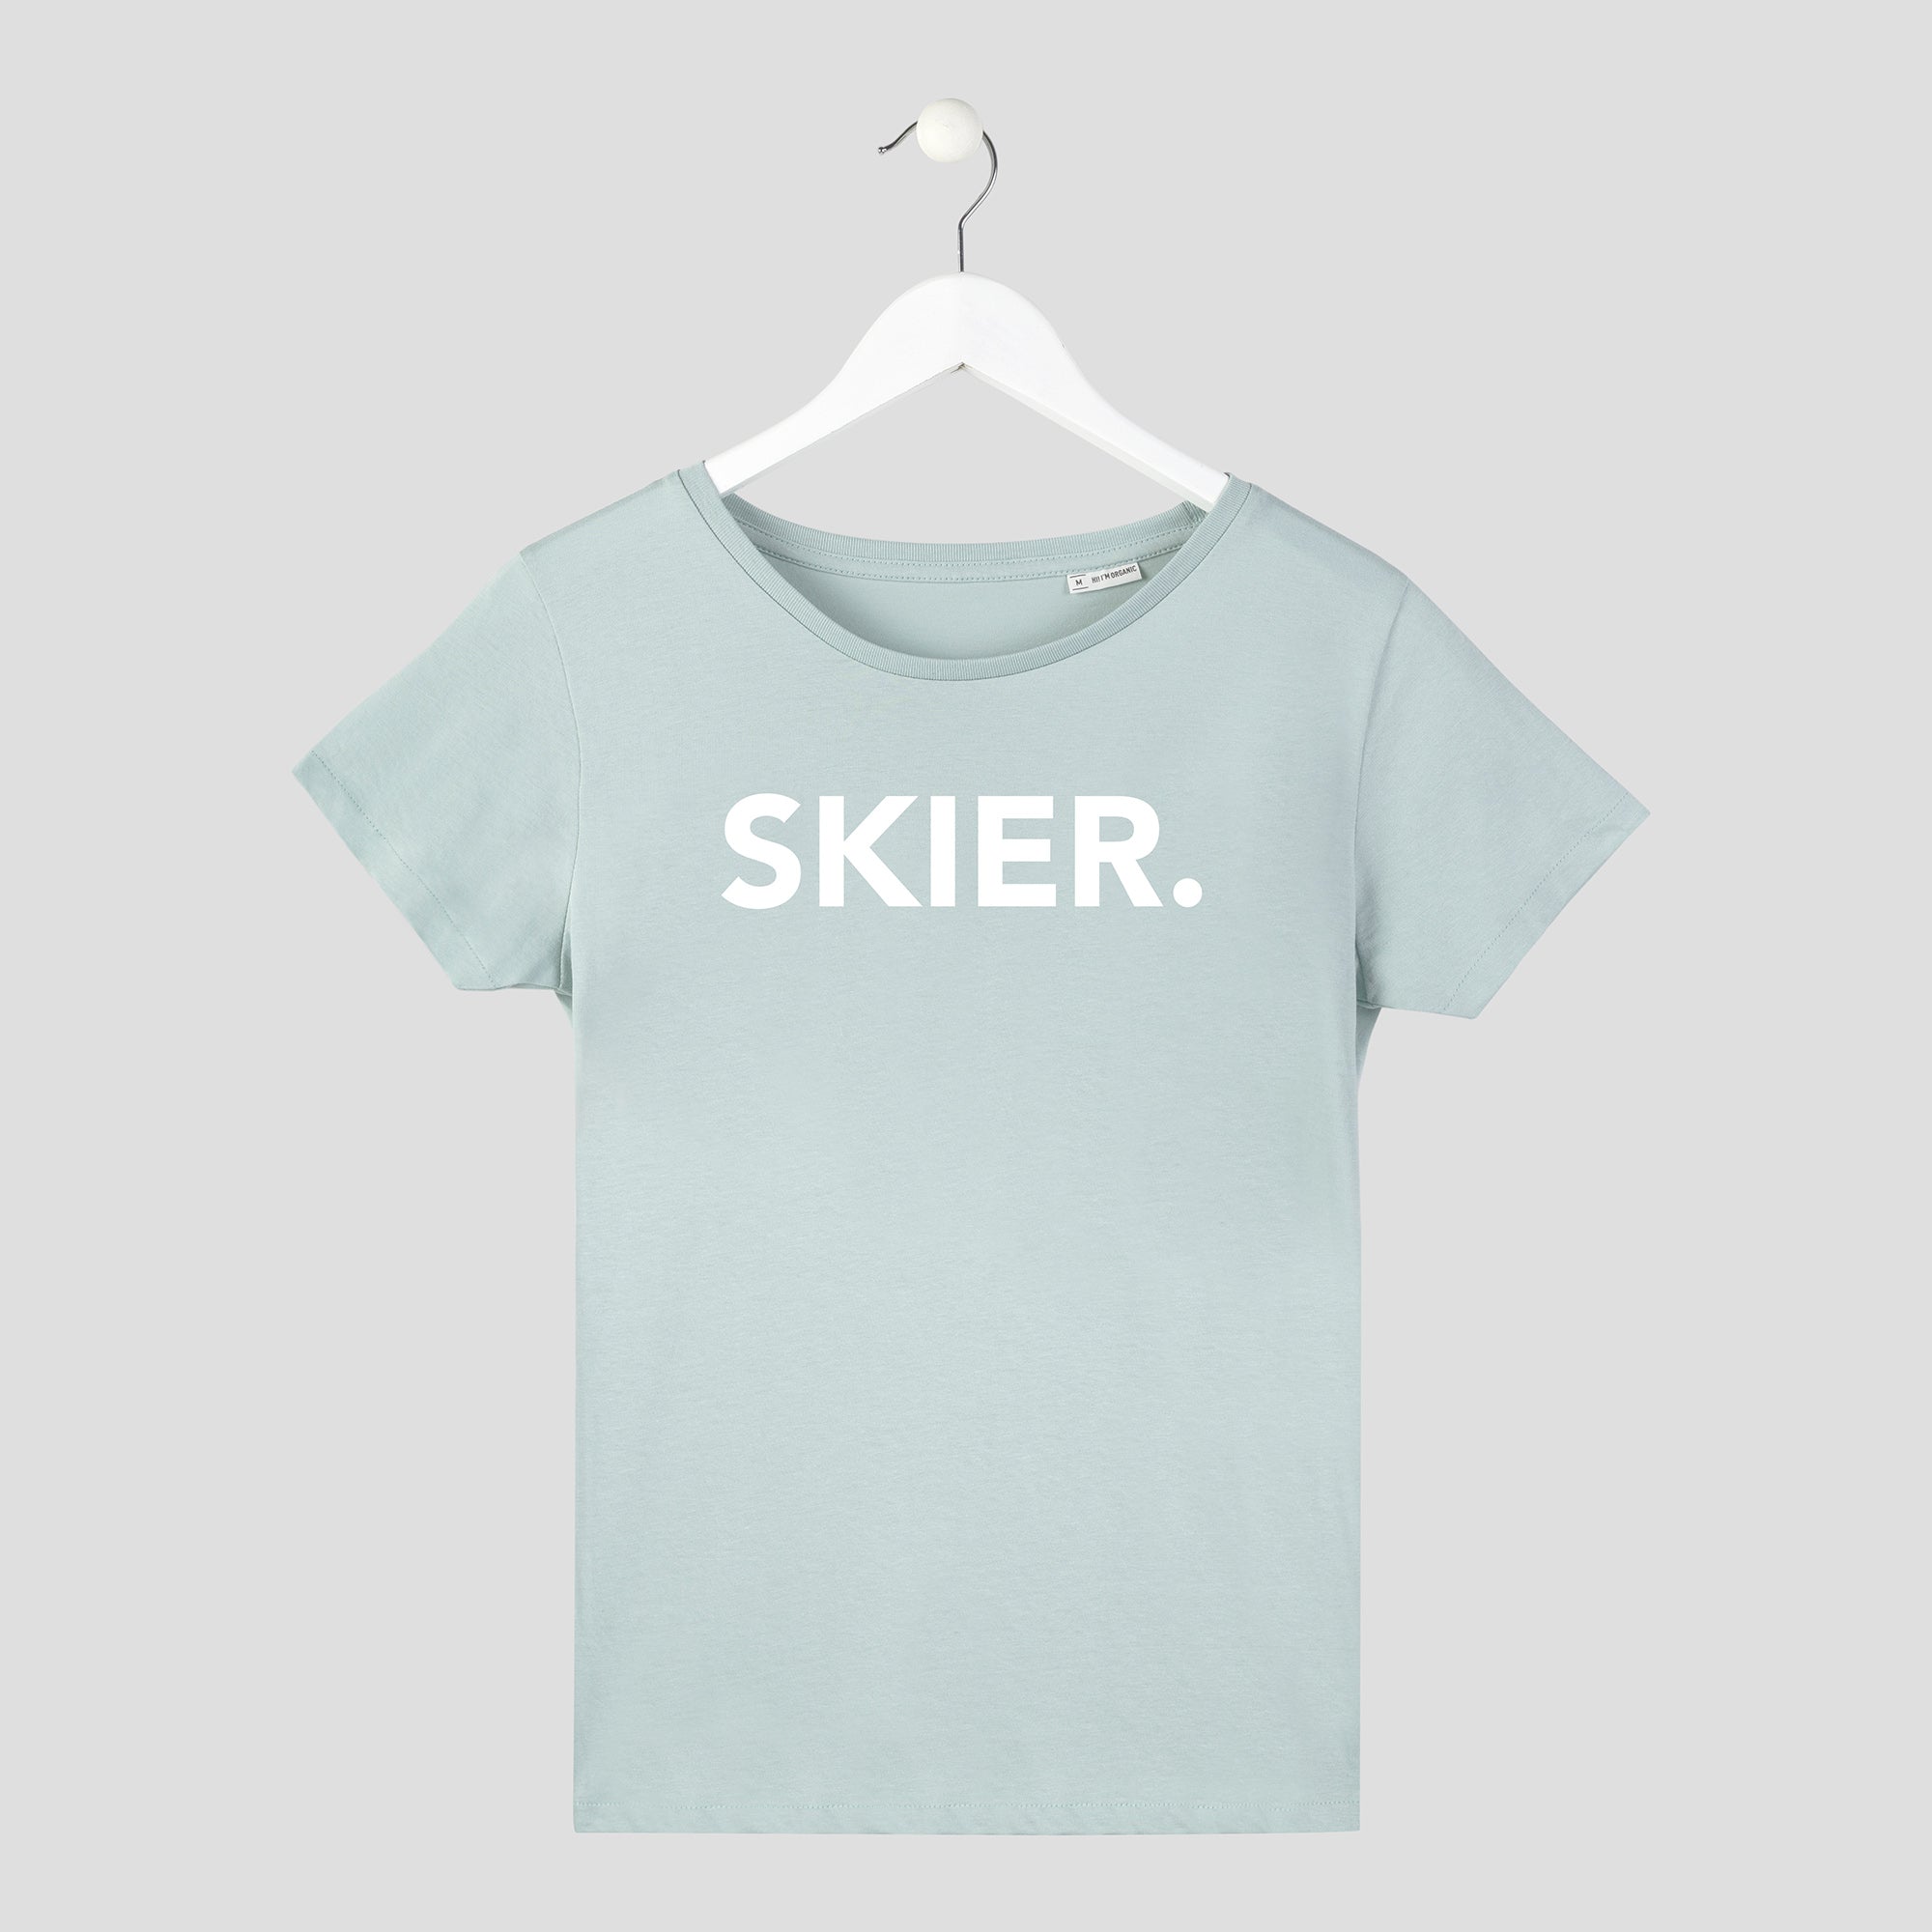 Camiseta de chica diseño ski color verde